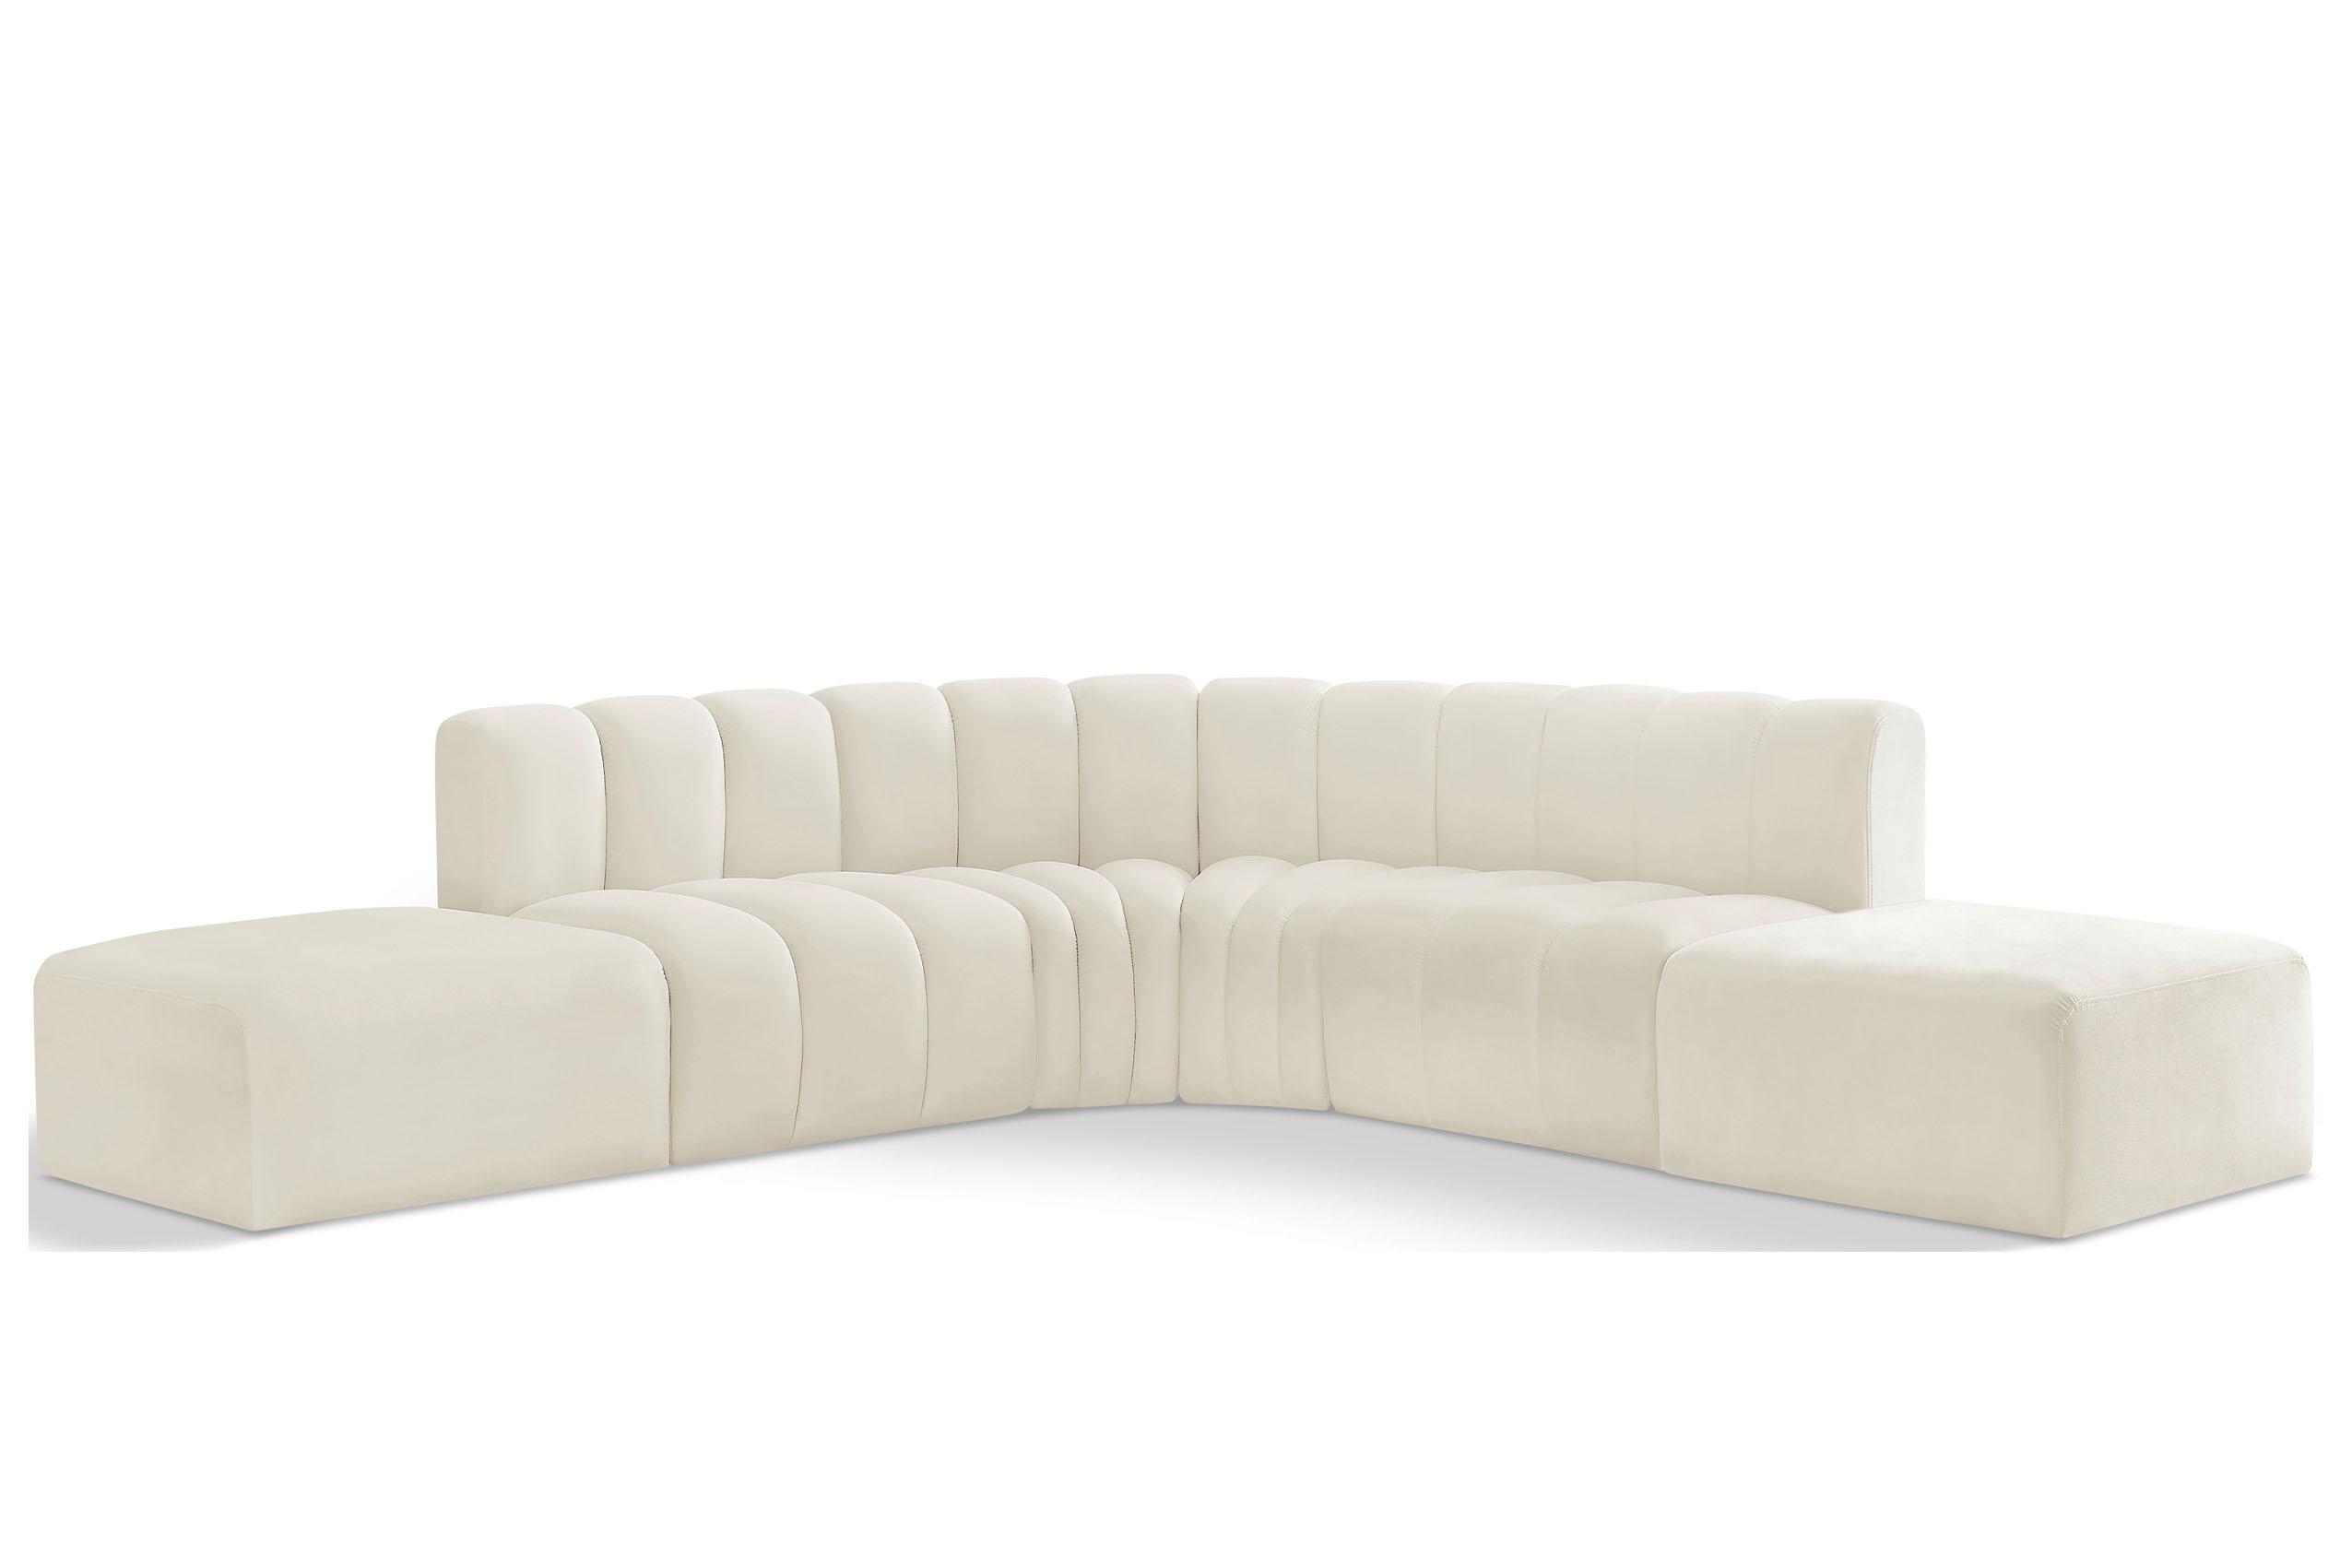 Contemporary, Modern Modular Sectional Sofa ARC 103Cream-S6C 103Cream-S6C in Cream Velvet